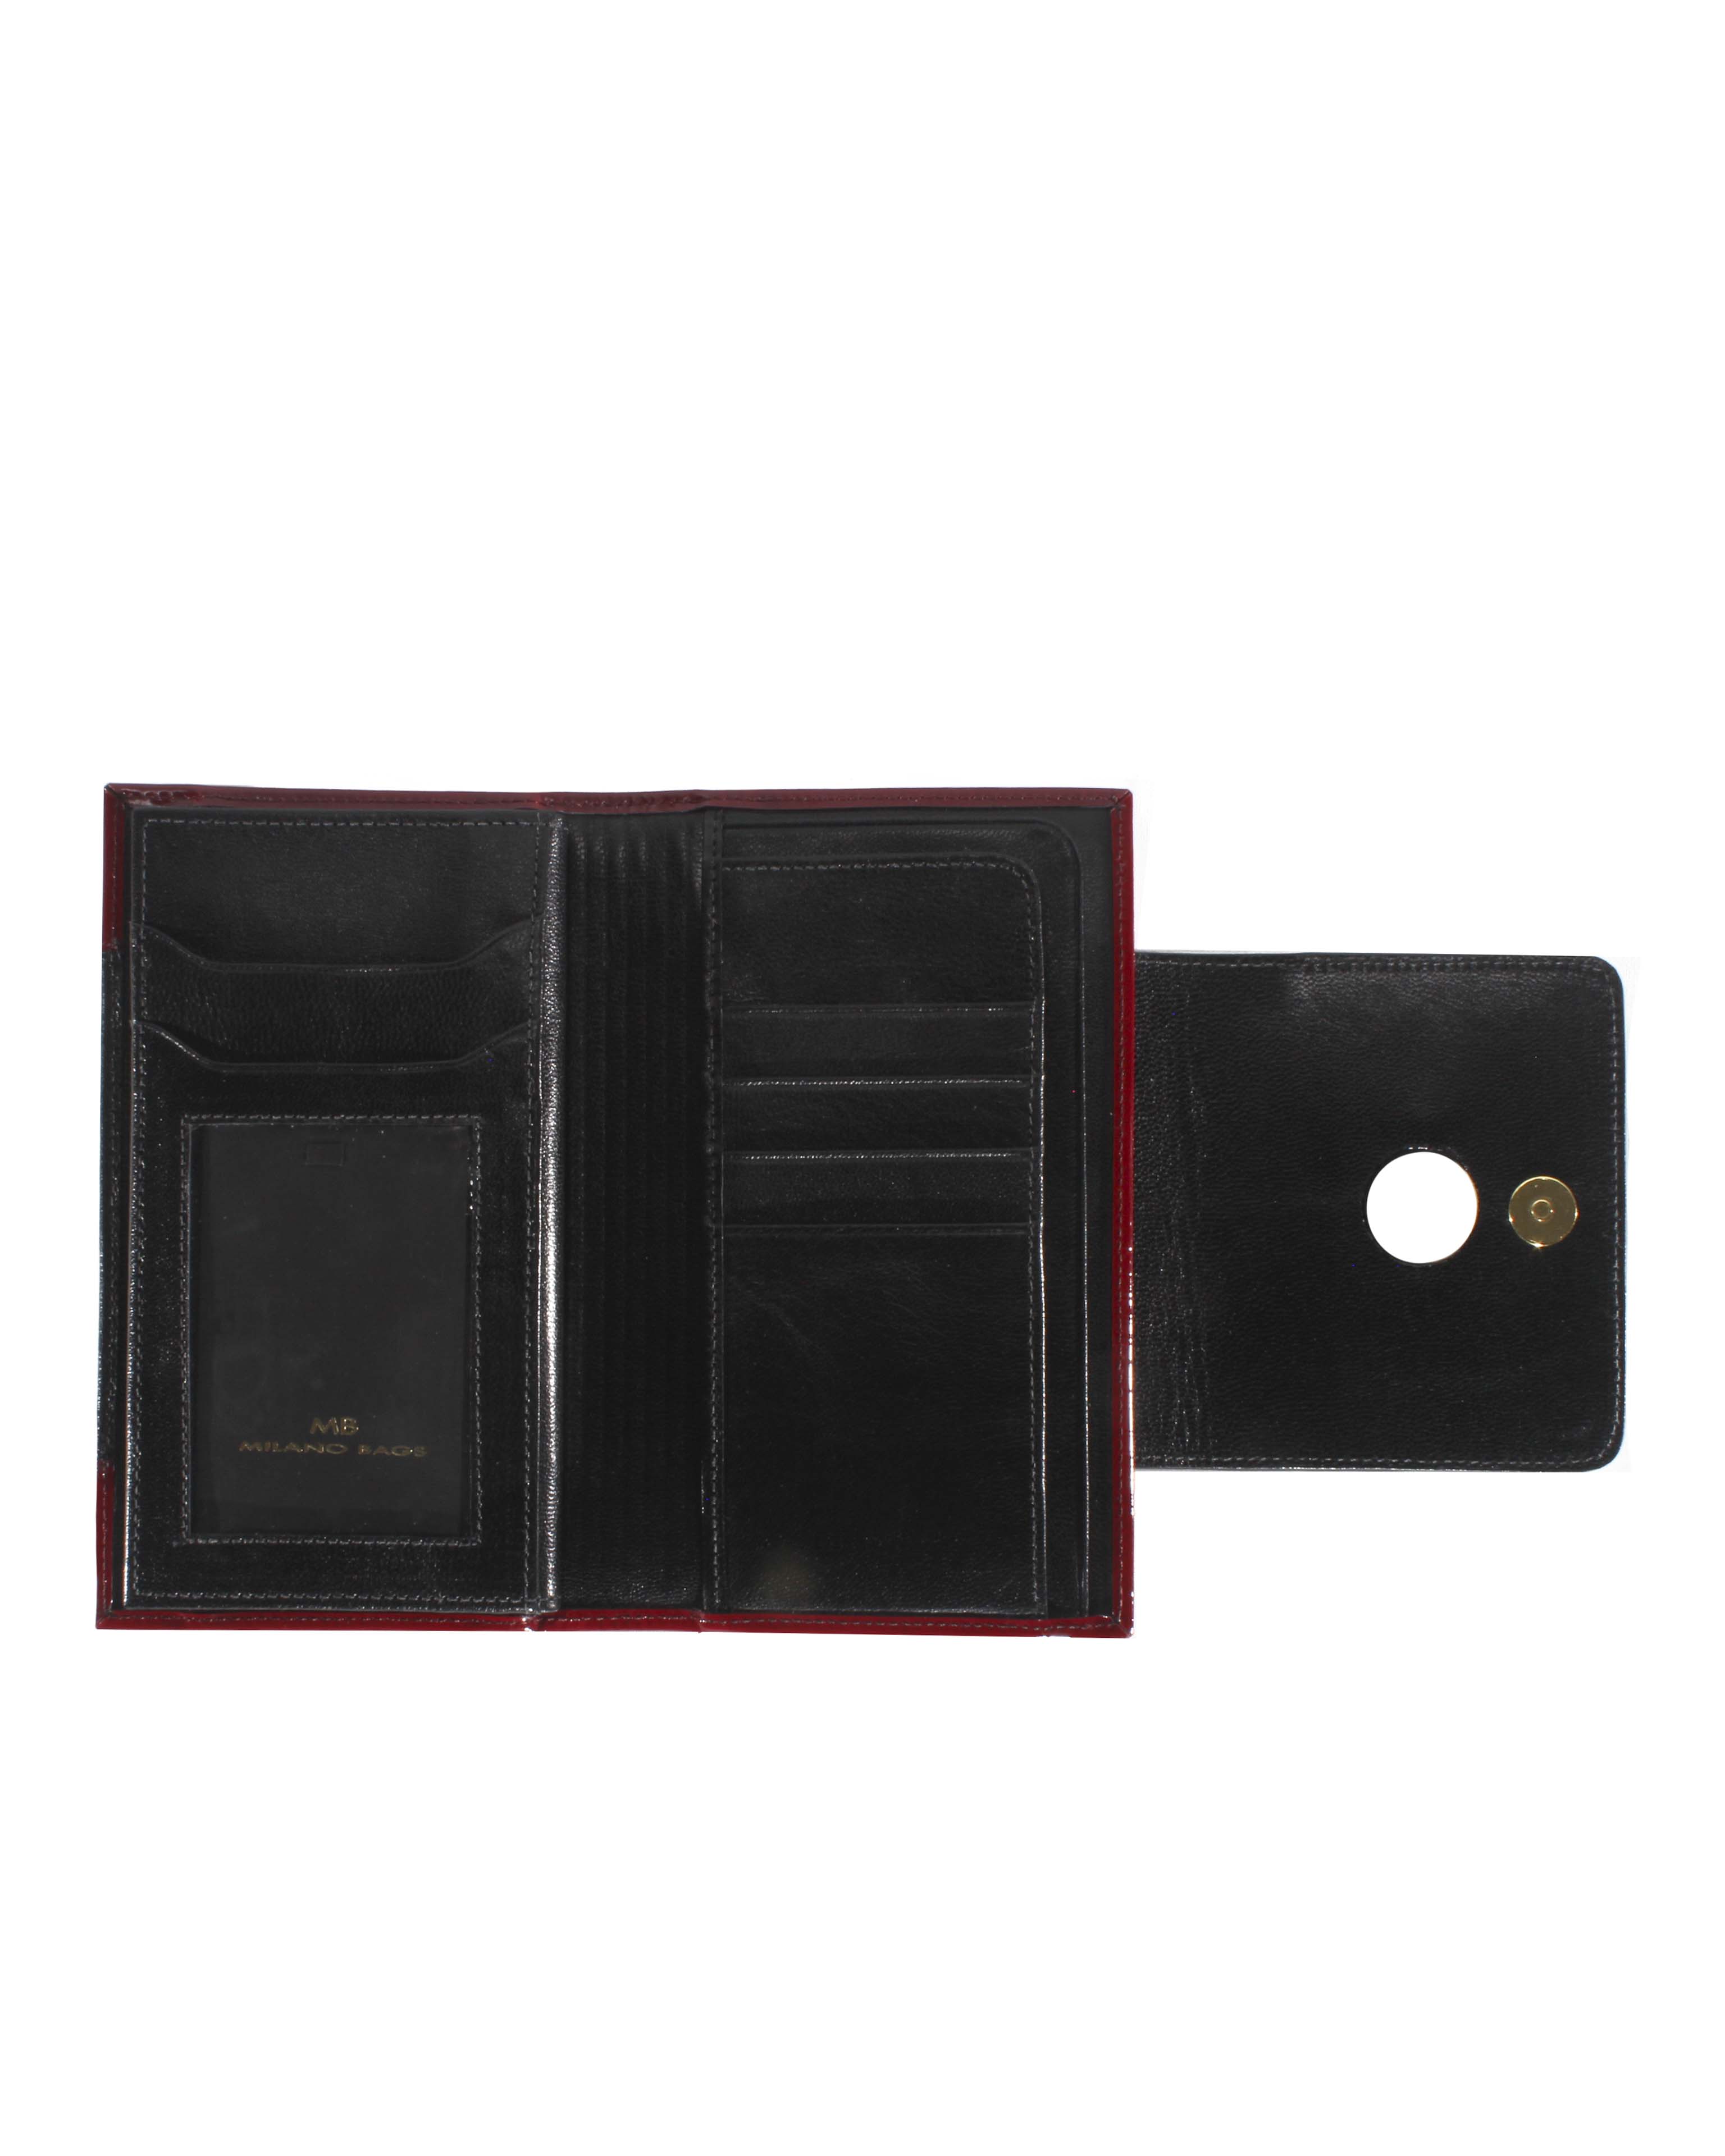 Billetera de Mujer BM-476 Color Rojo con Negro